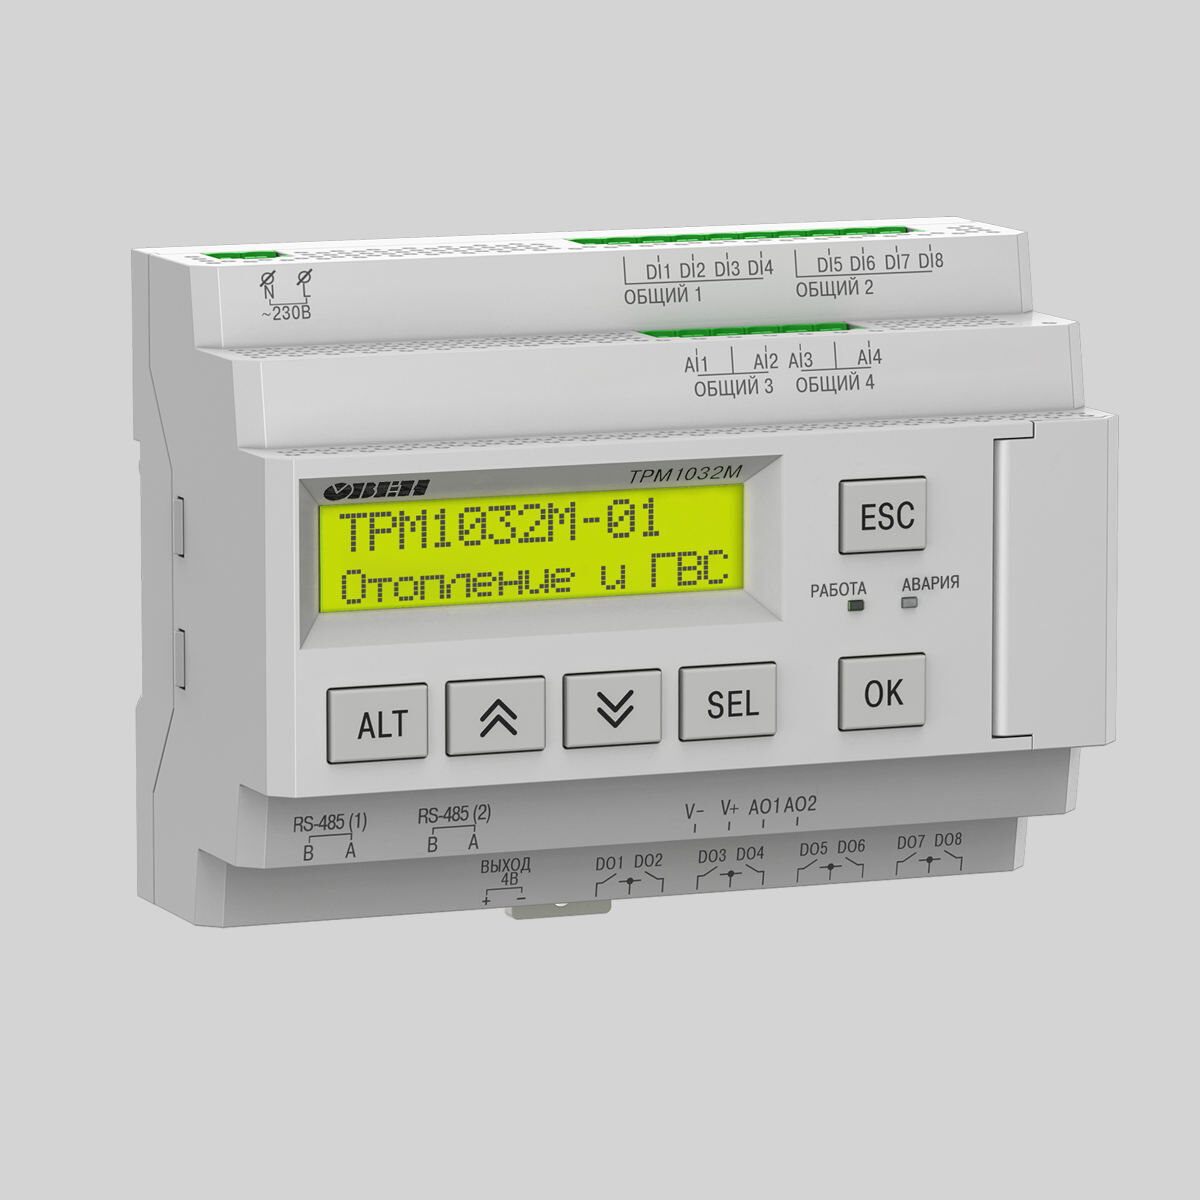 Регулятор для многоконтурных систем отопления и ГВС ТРМ1032М-01.00.Р